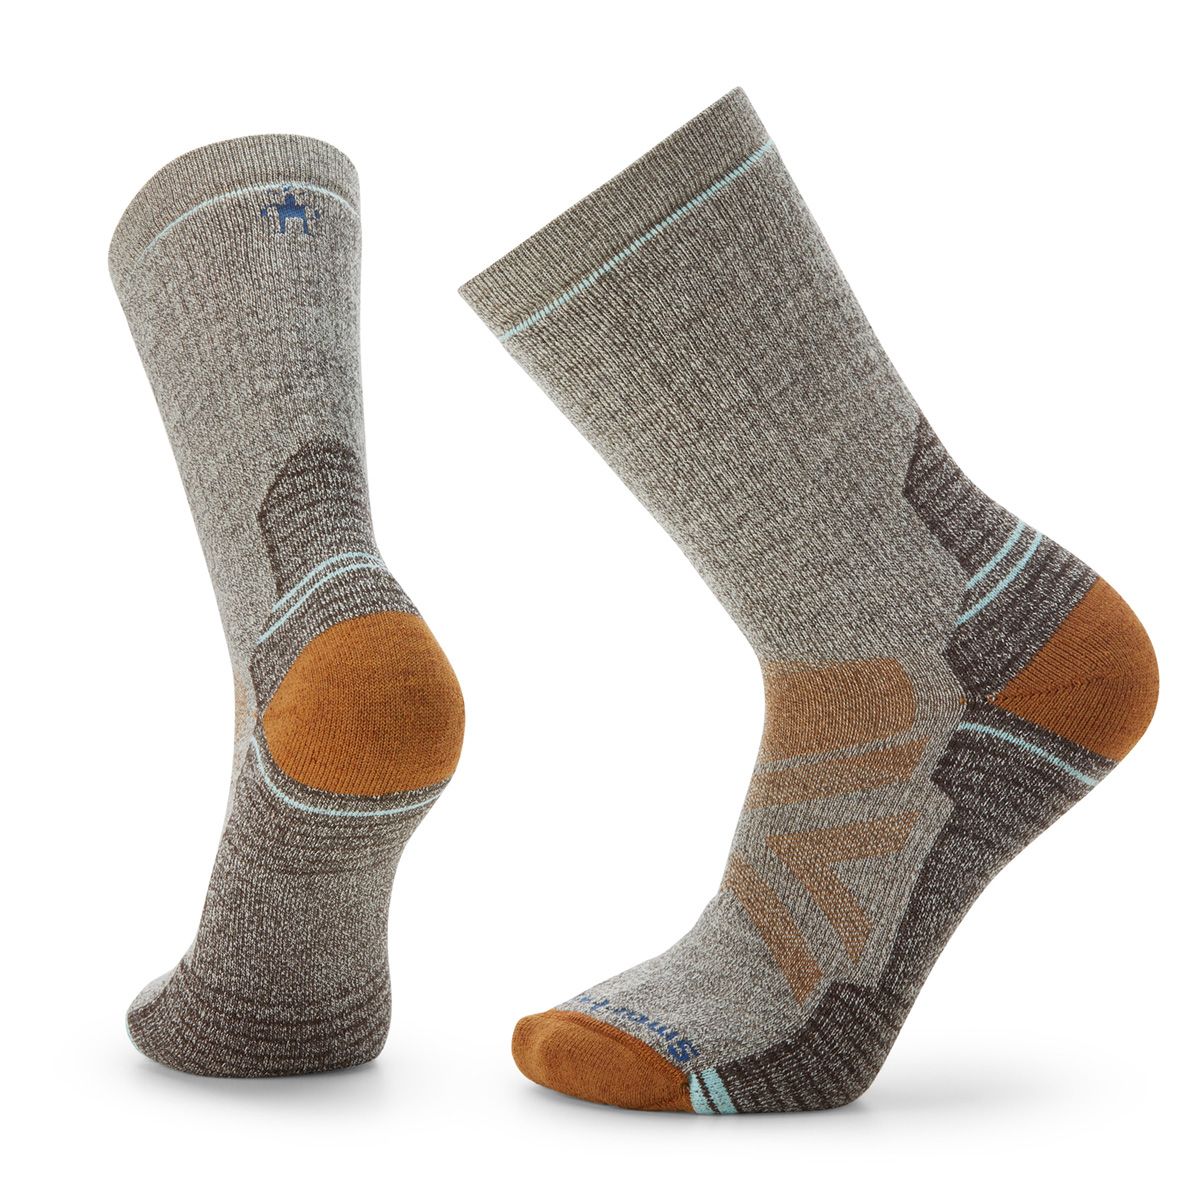 Merino Socks, 100% Merino Wool, Soft and Warm, Unisex Socks Very Thick -   Canada